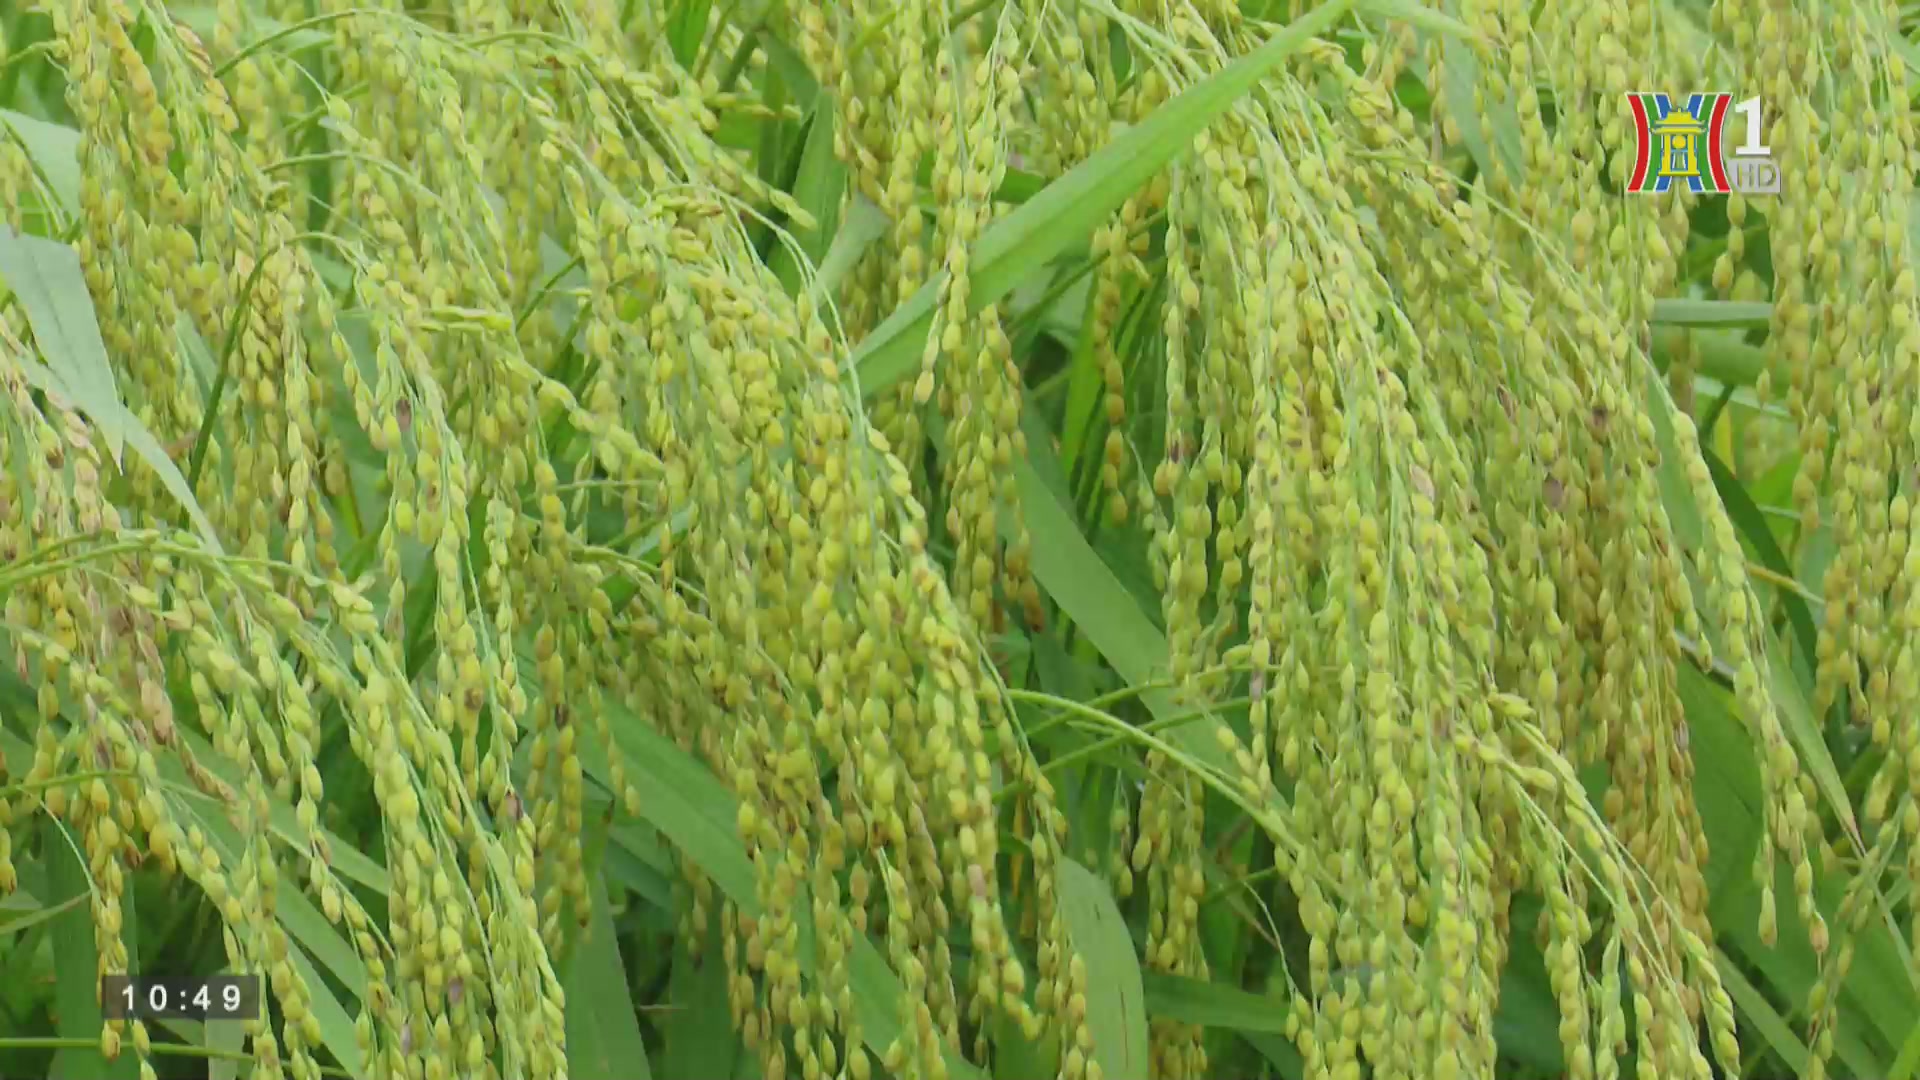 Quản lý chất lượng an toàn thực phẩm: Hiệu quả mô hình lúa Nếp cái hoa vàng tại xã Thụy Lâm